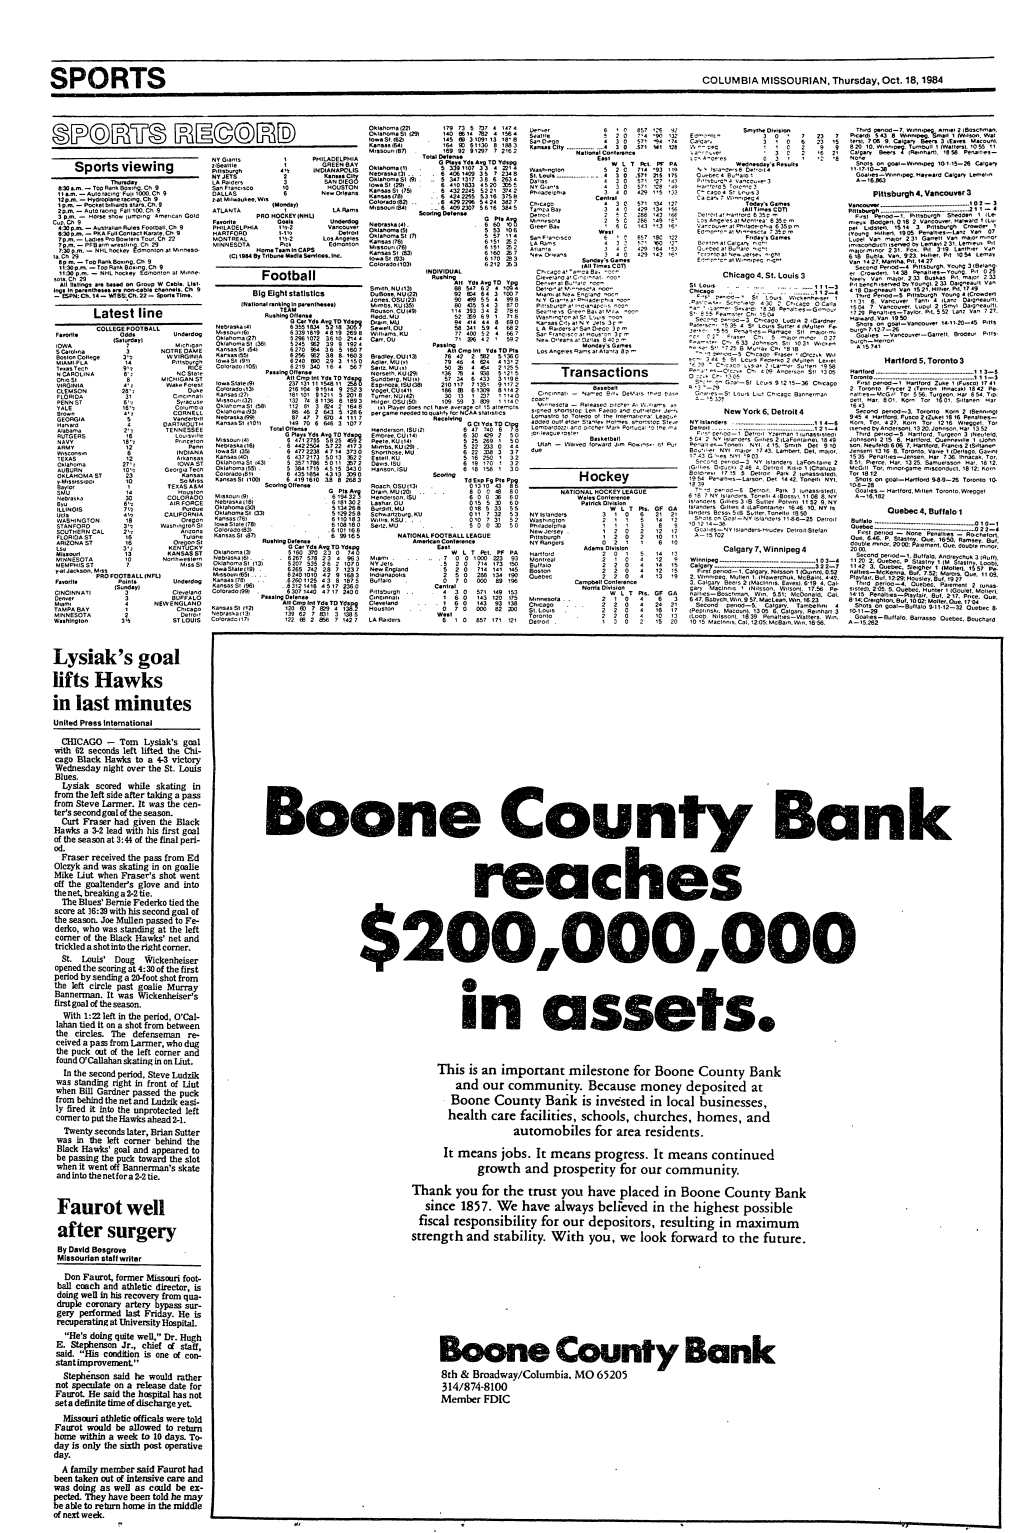 Boone County Bonk